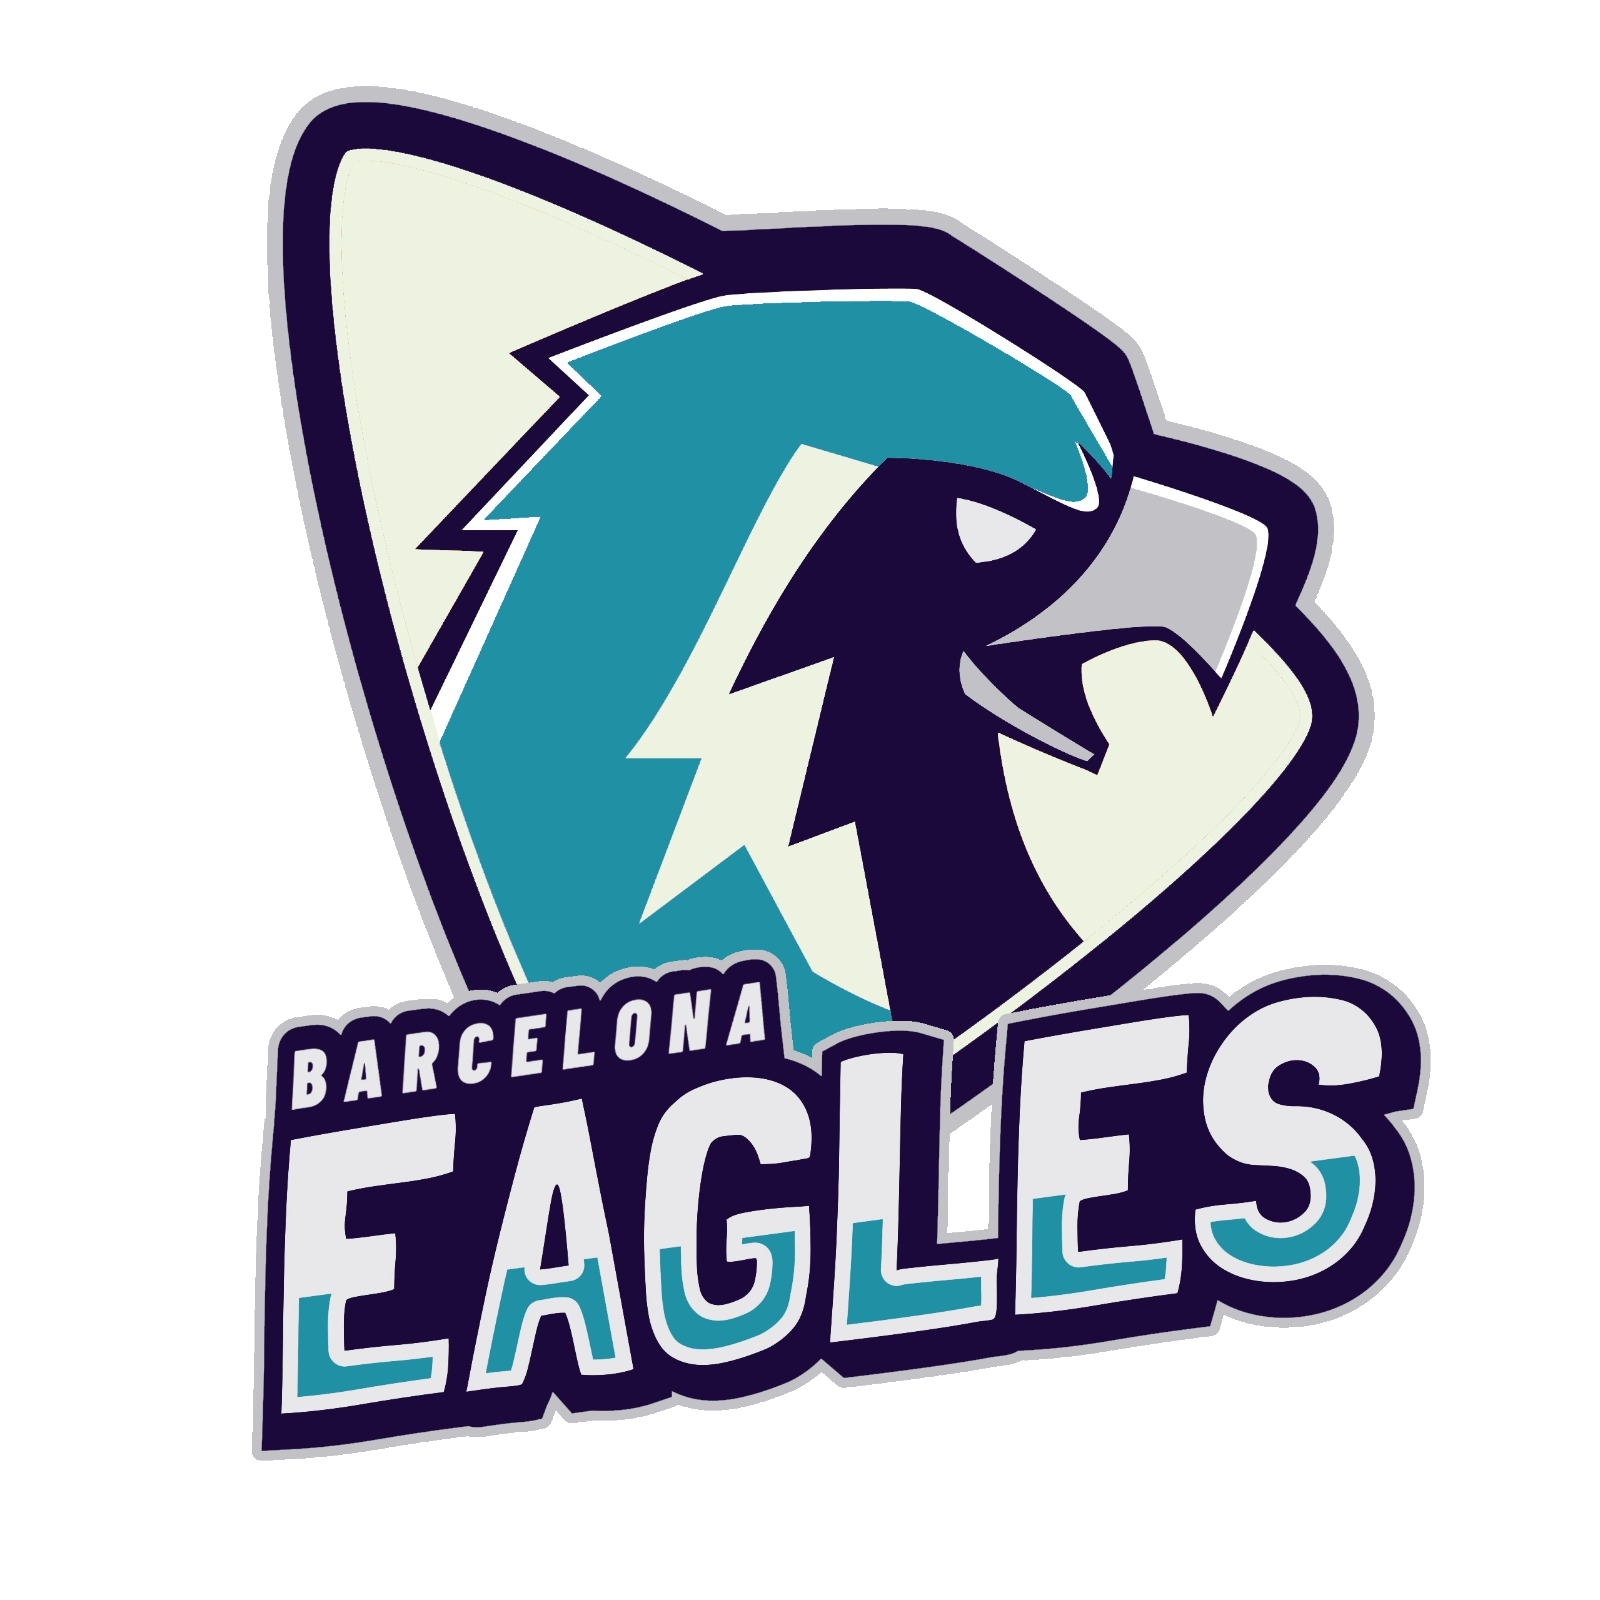 Barcelona Eagles